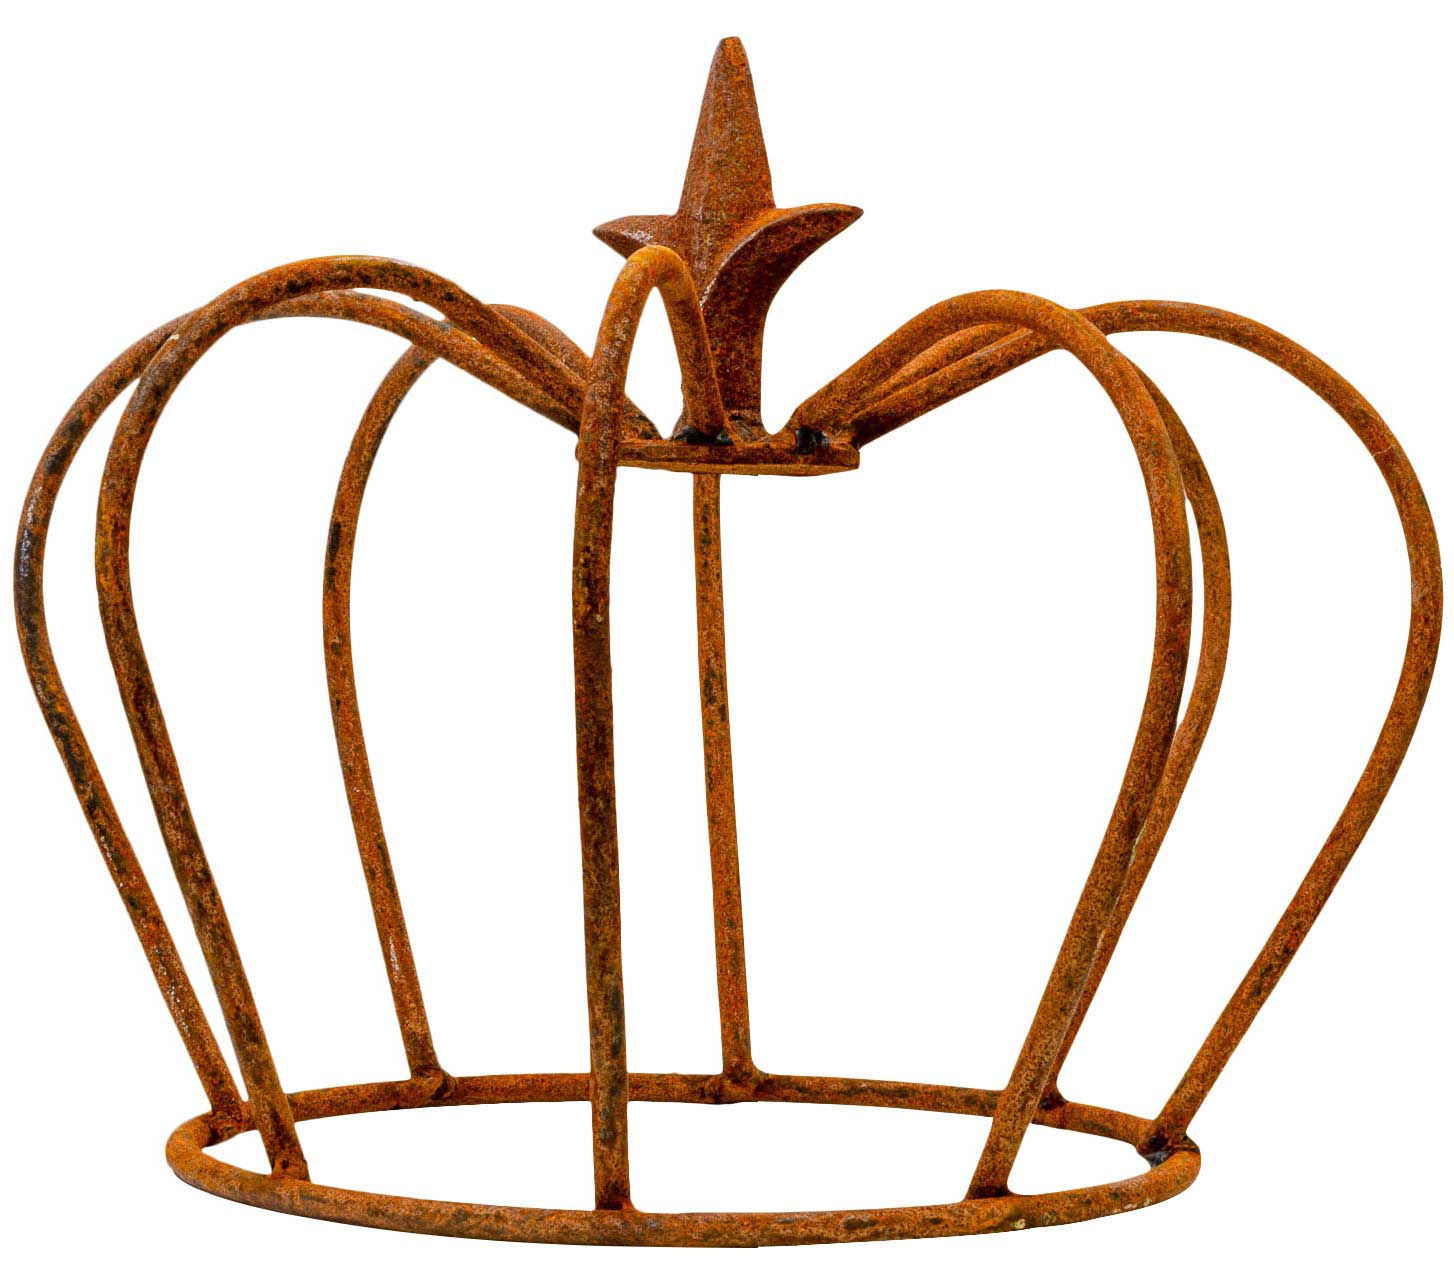 Deko Eisen Inspirierend Crown Iron Lily Garden Decoration Rust Antique Style 24cm